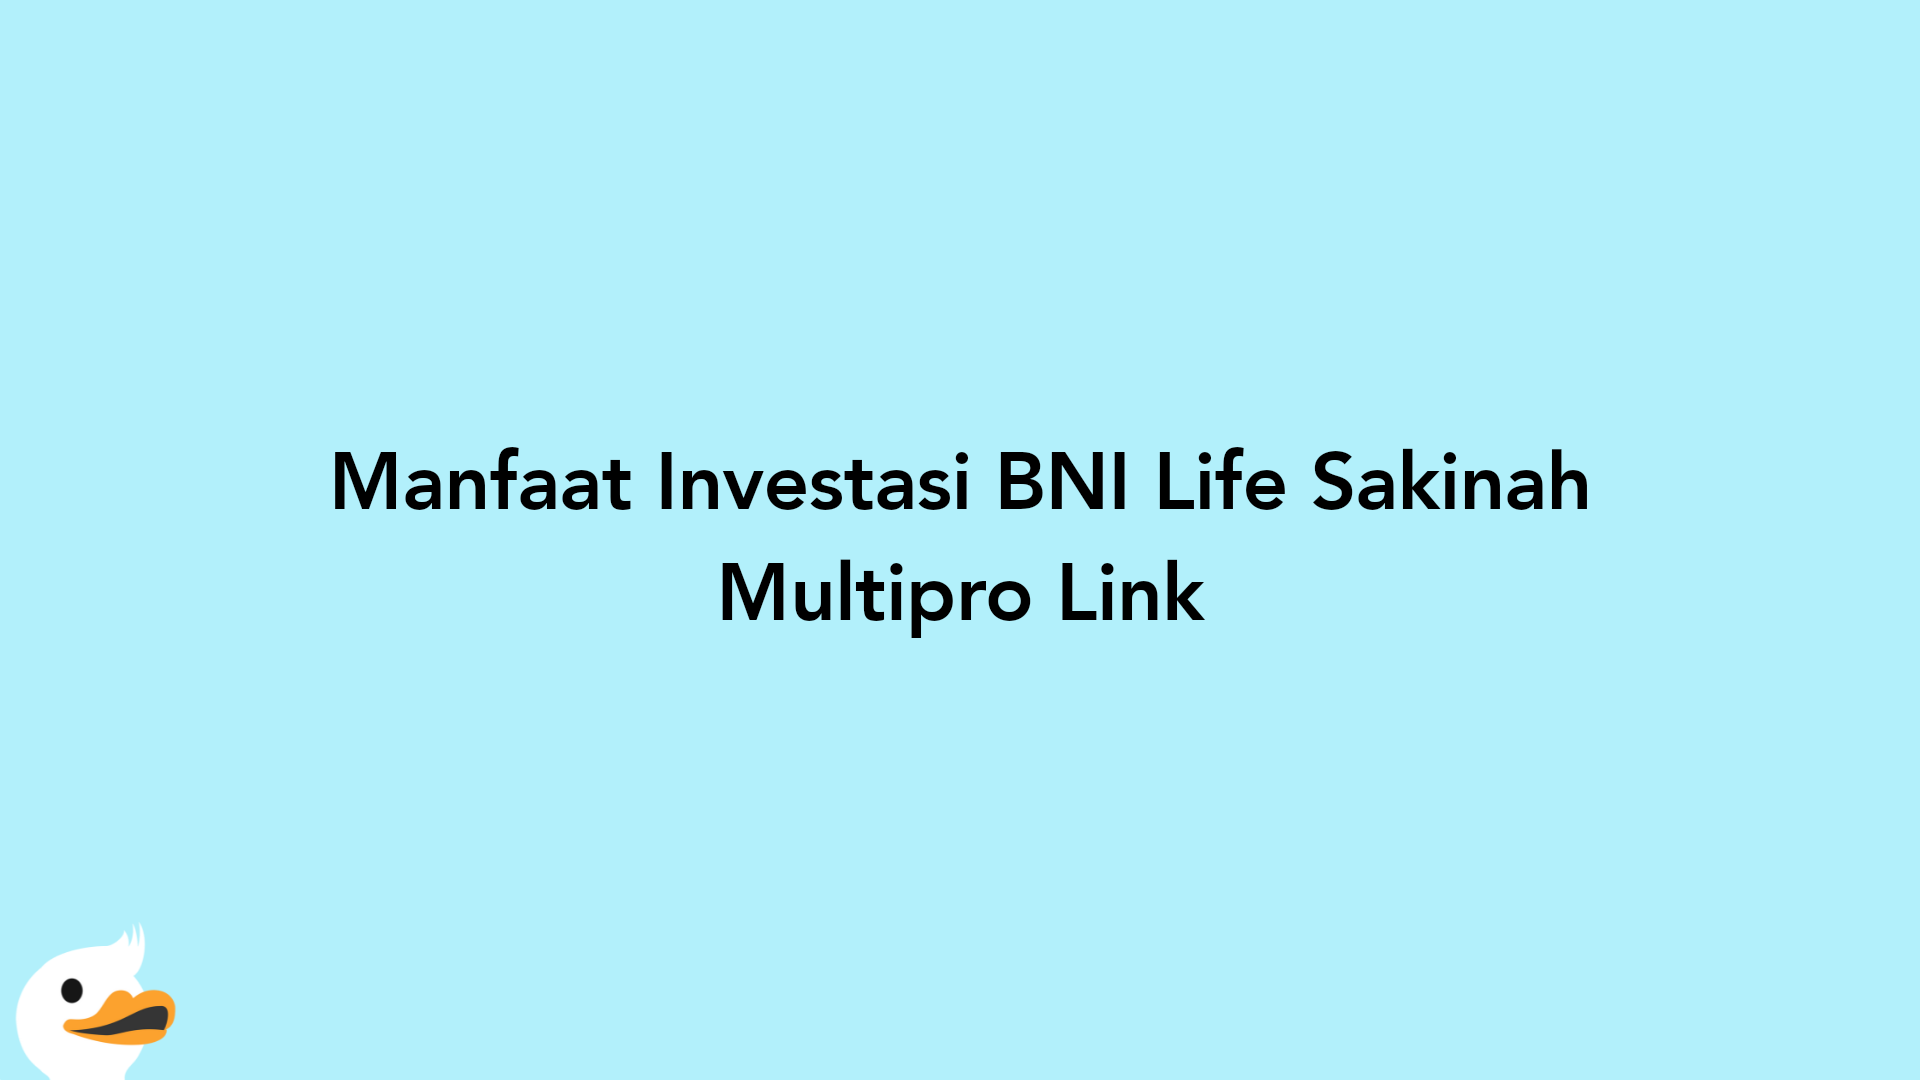 Manfaat Investasi BNI Life Sakinah Multipro Link